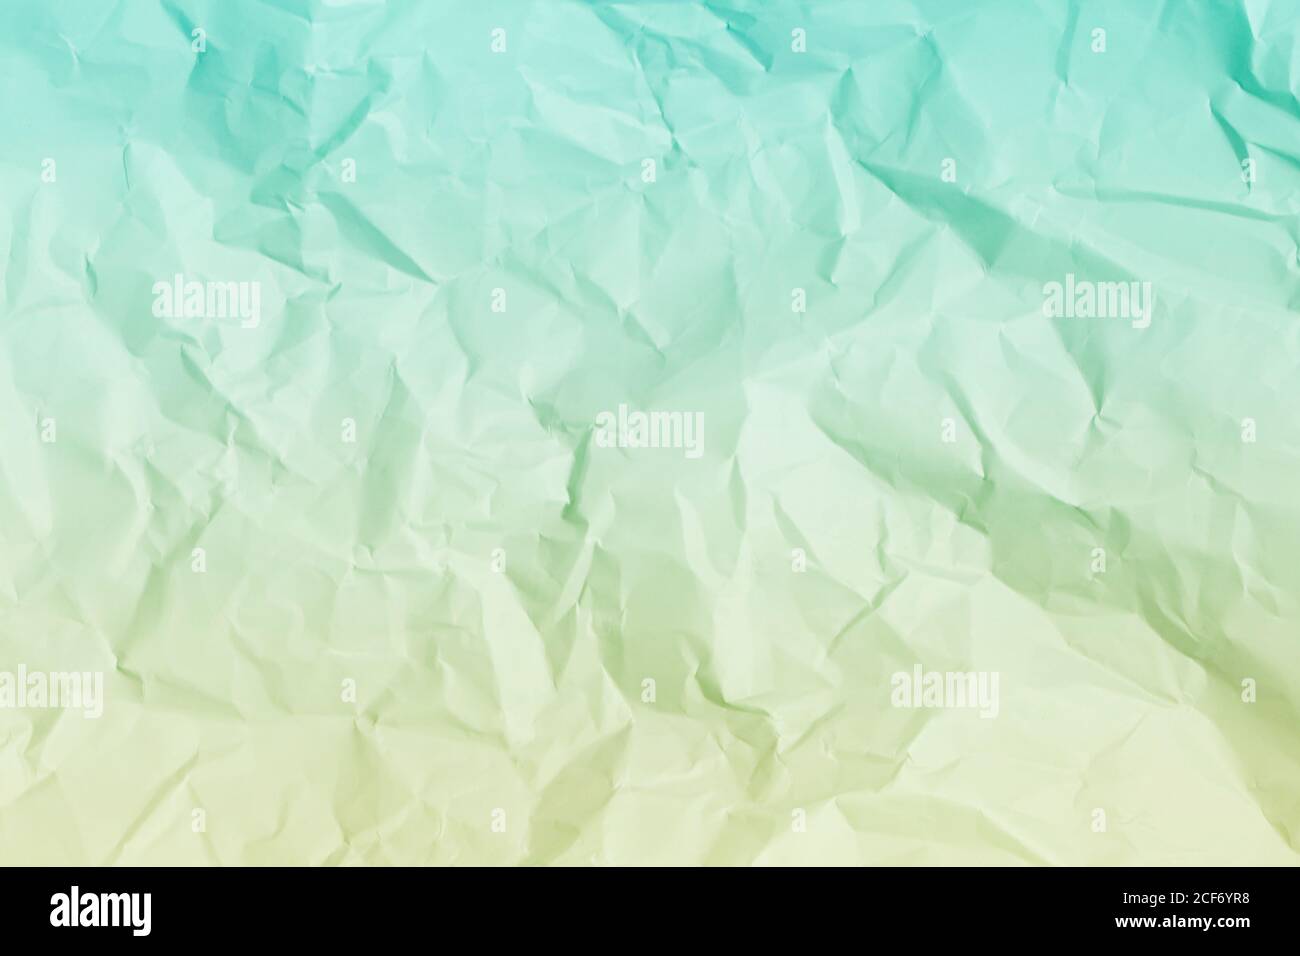 sfondo di carta crumpled verde, texture per gli screensaver di web design. Modello per vari scopi o creazione di confezioni. Foto Stock